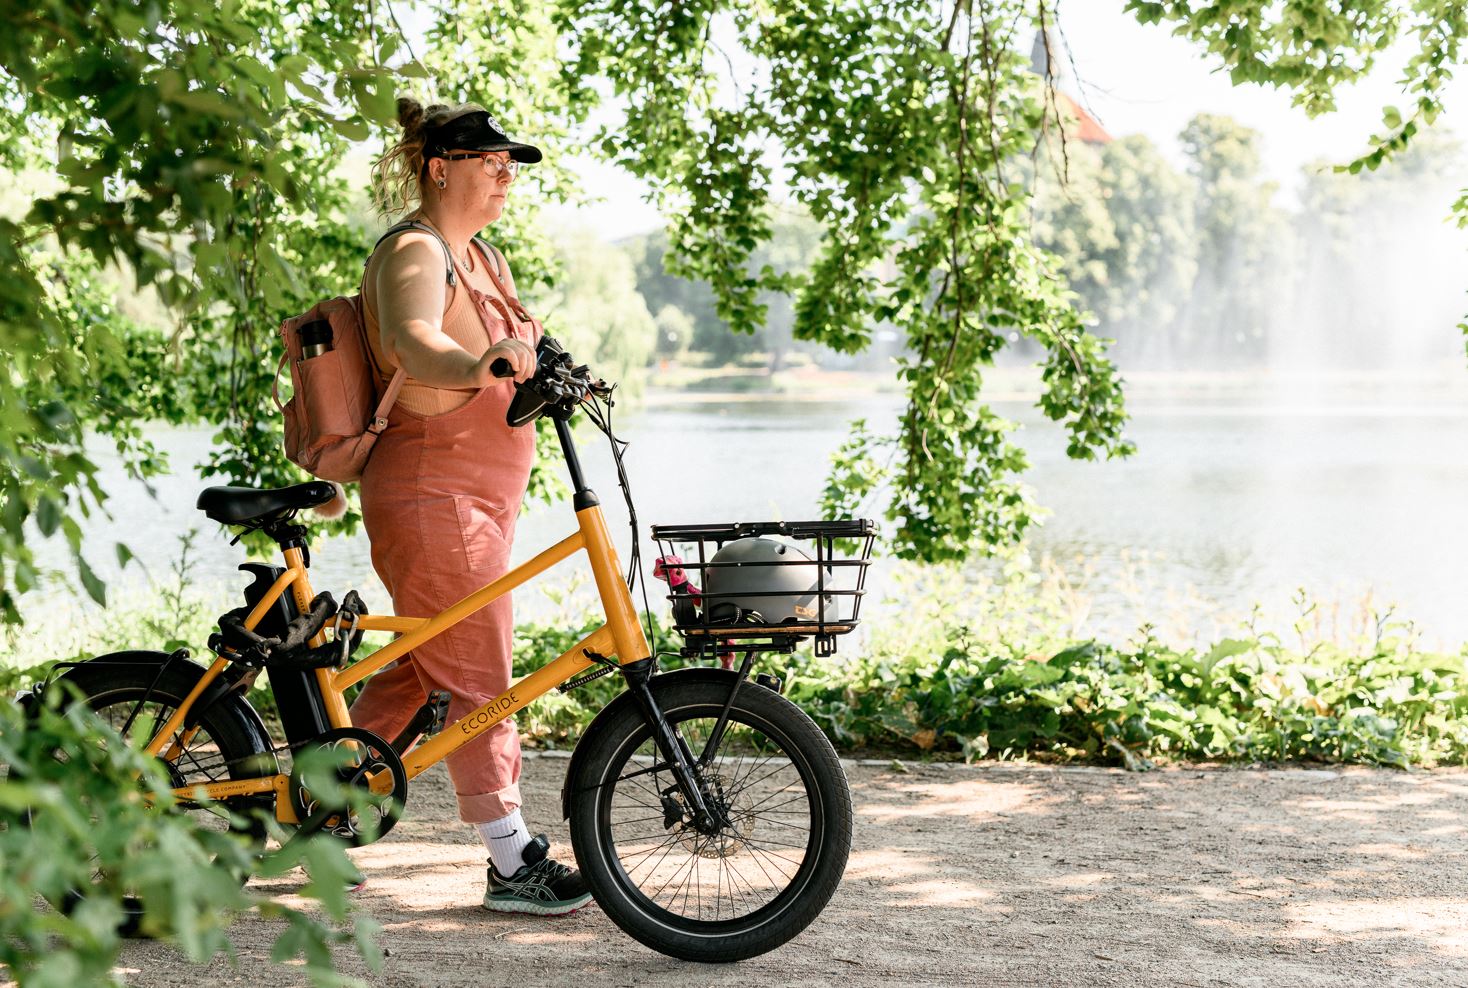 Kvinna med rosa hängselbyxor, rosa ryggsäck och svart skärmkeps promenerar vid en damm och leder en orange-gul cykel. Grönskande träd och växter syns i för- och bakgrunden.